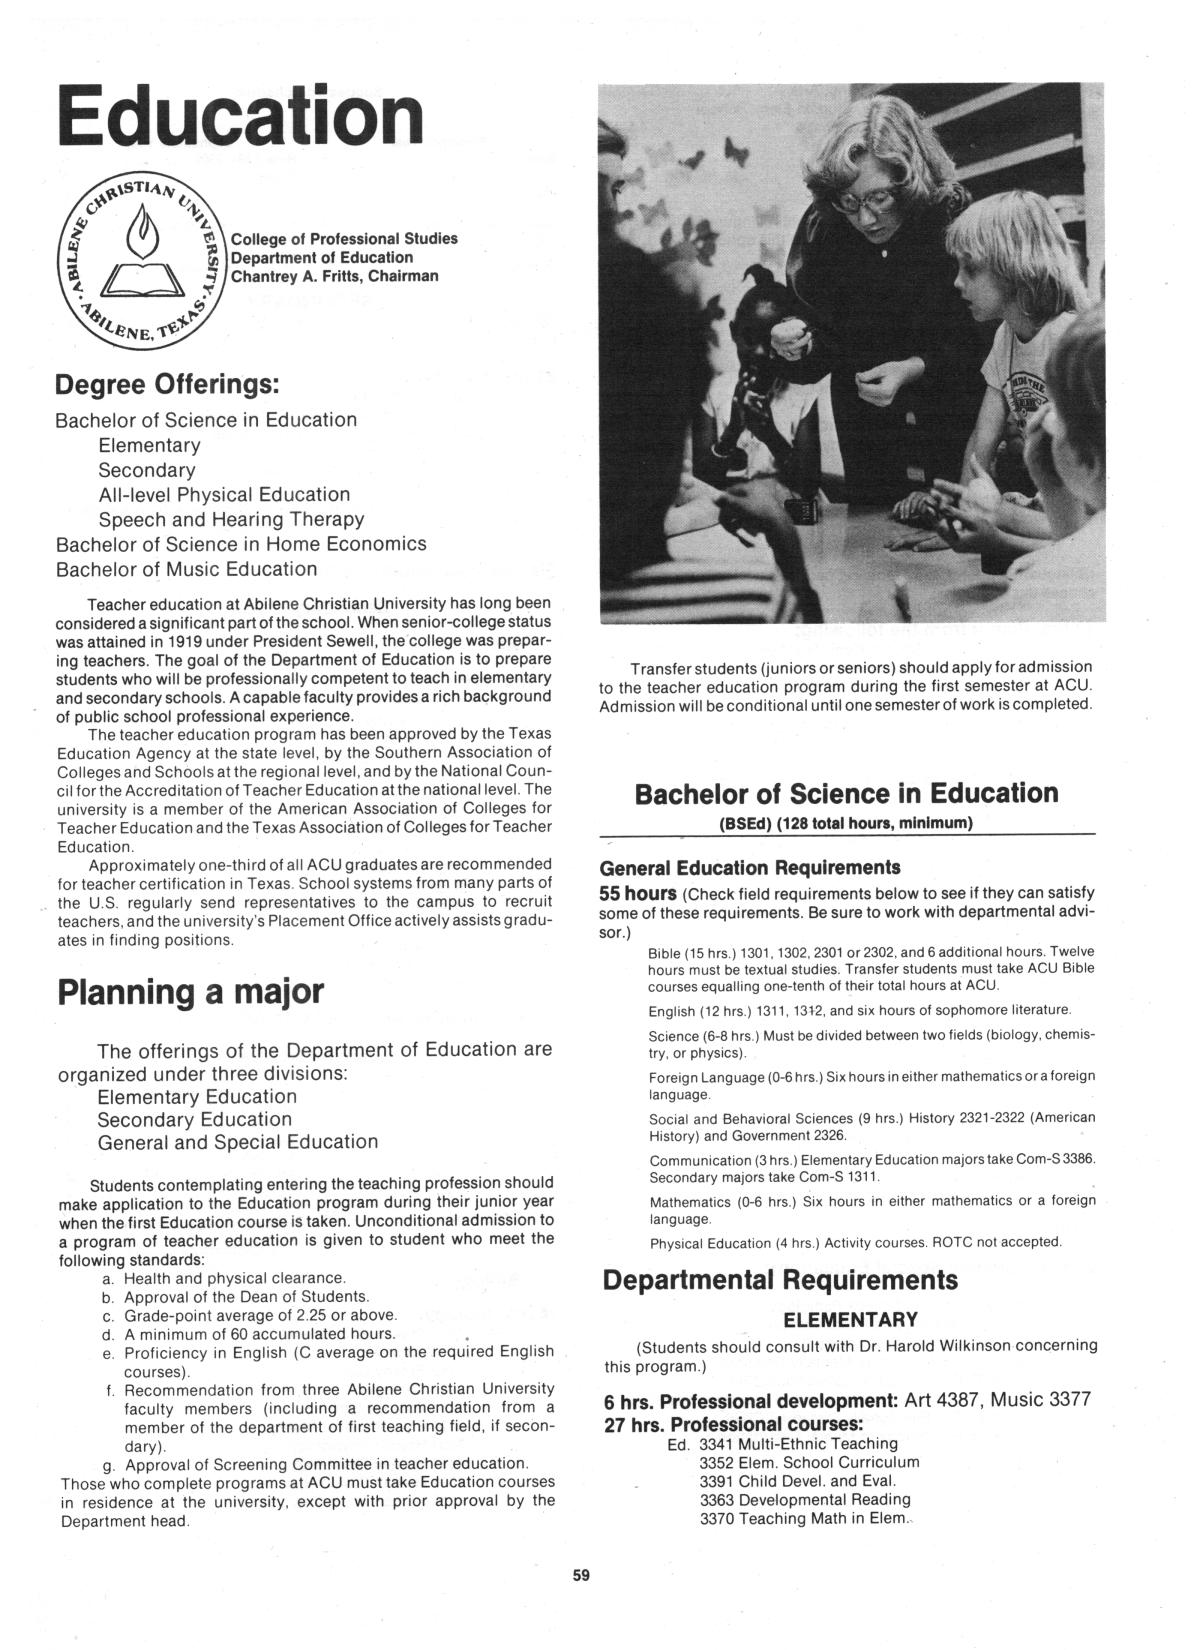 Catalog of Abilene Christian University, 1982-1983
                                                
                                                    59
                                                